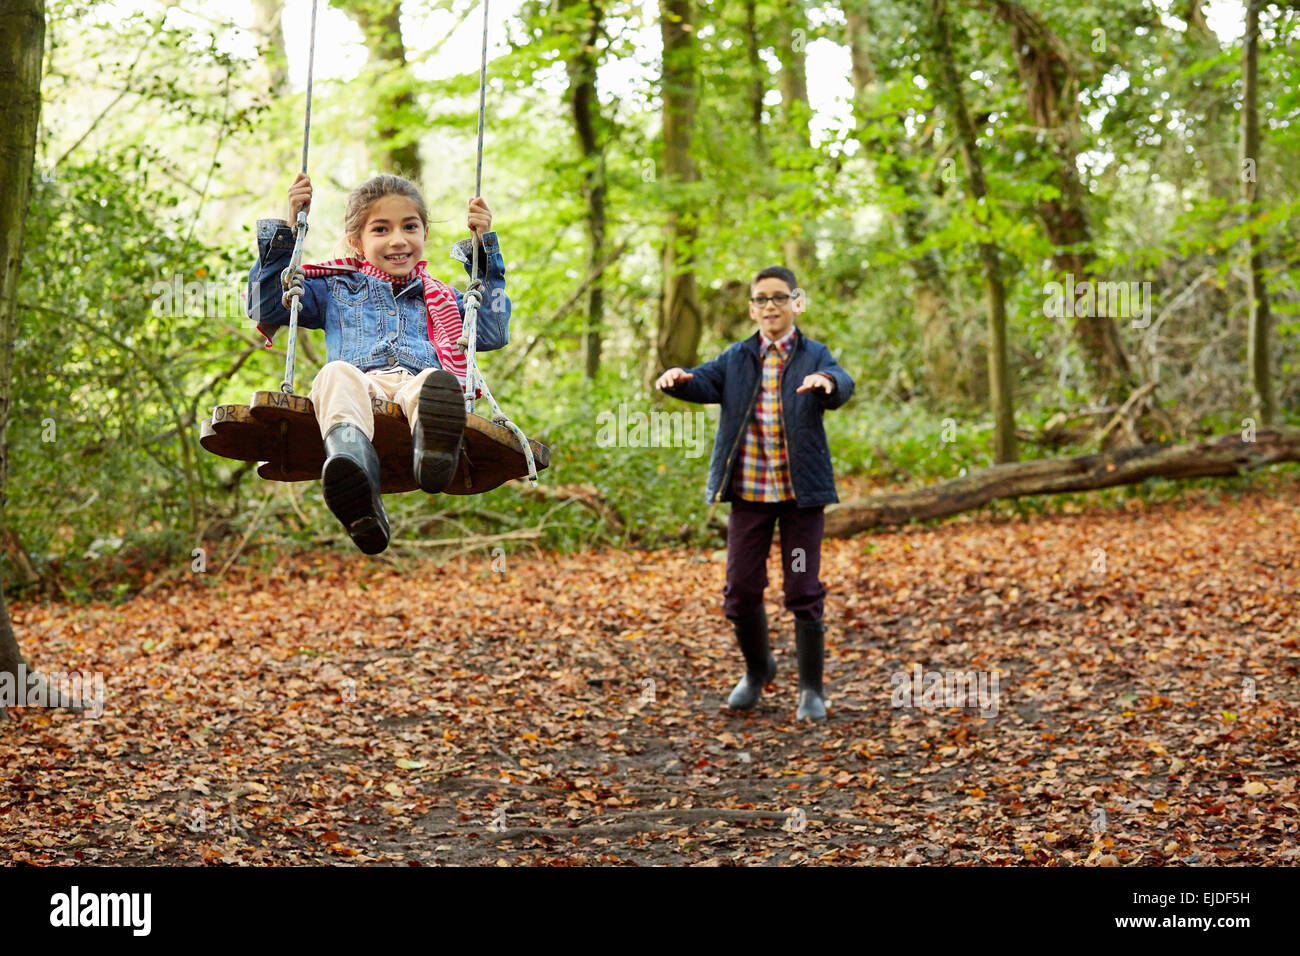 Boschi di faggio in autunno. Una ragazza seduta su una oscillazione essendo spinto da suo fratello. Foto Stock